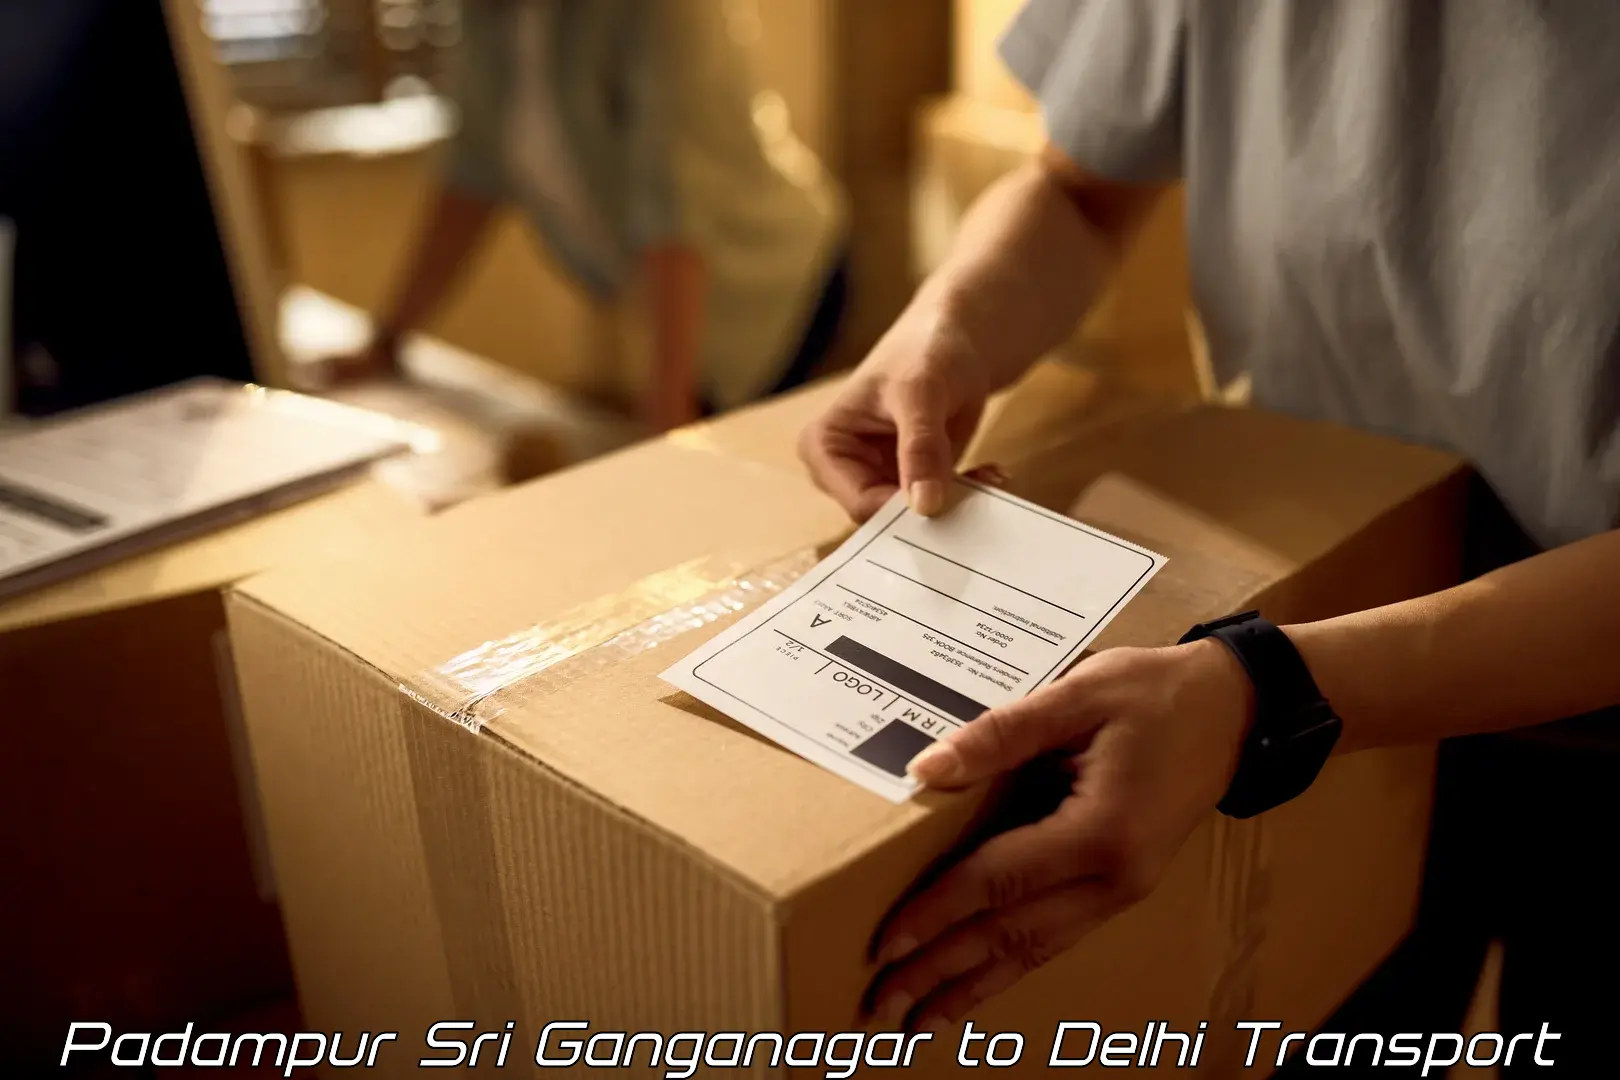 Shipping partner Padampur Sri Ganganagar to NIT Delhi